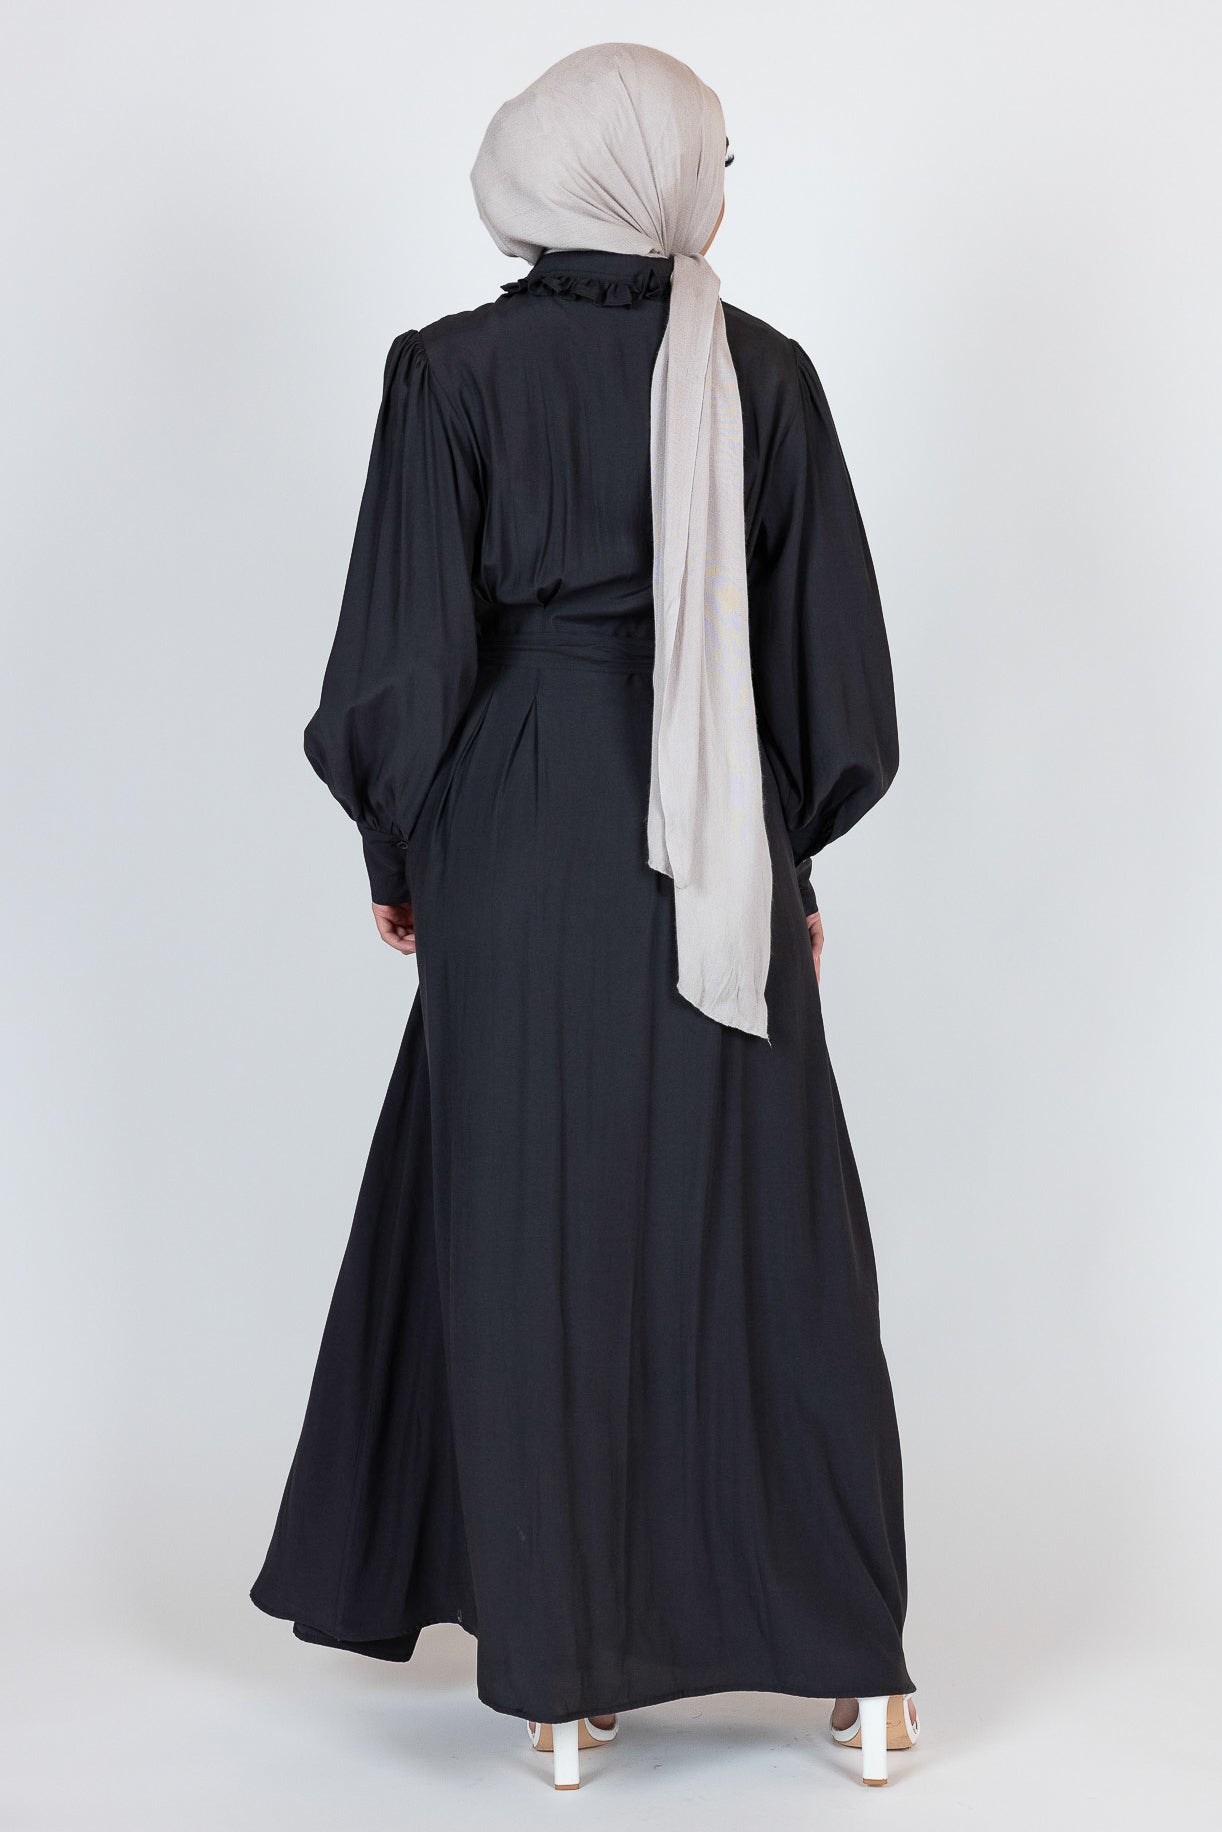 M8118Black-dress-abaya